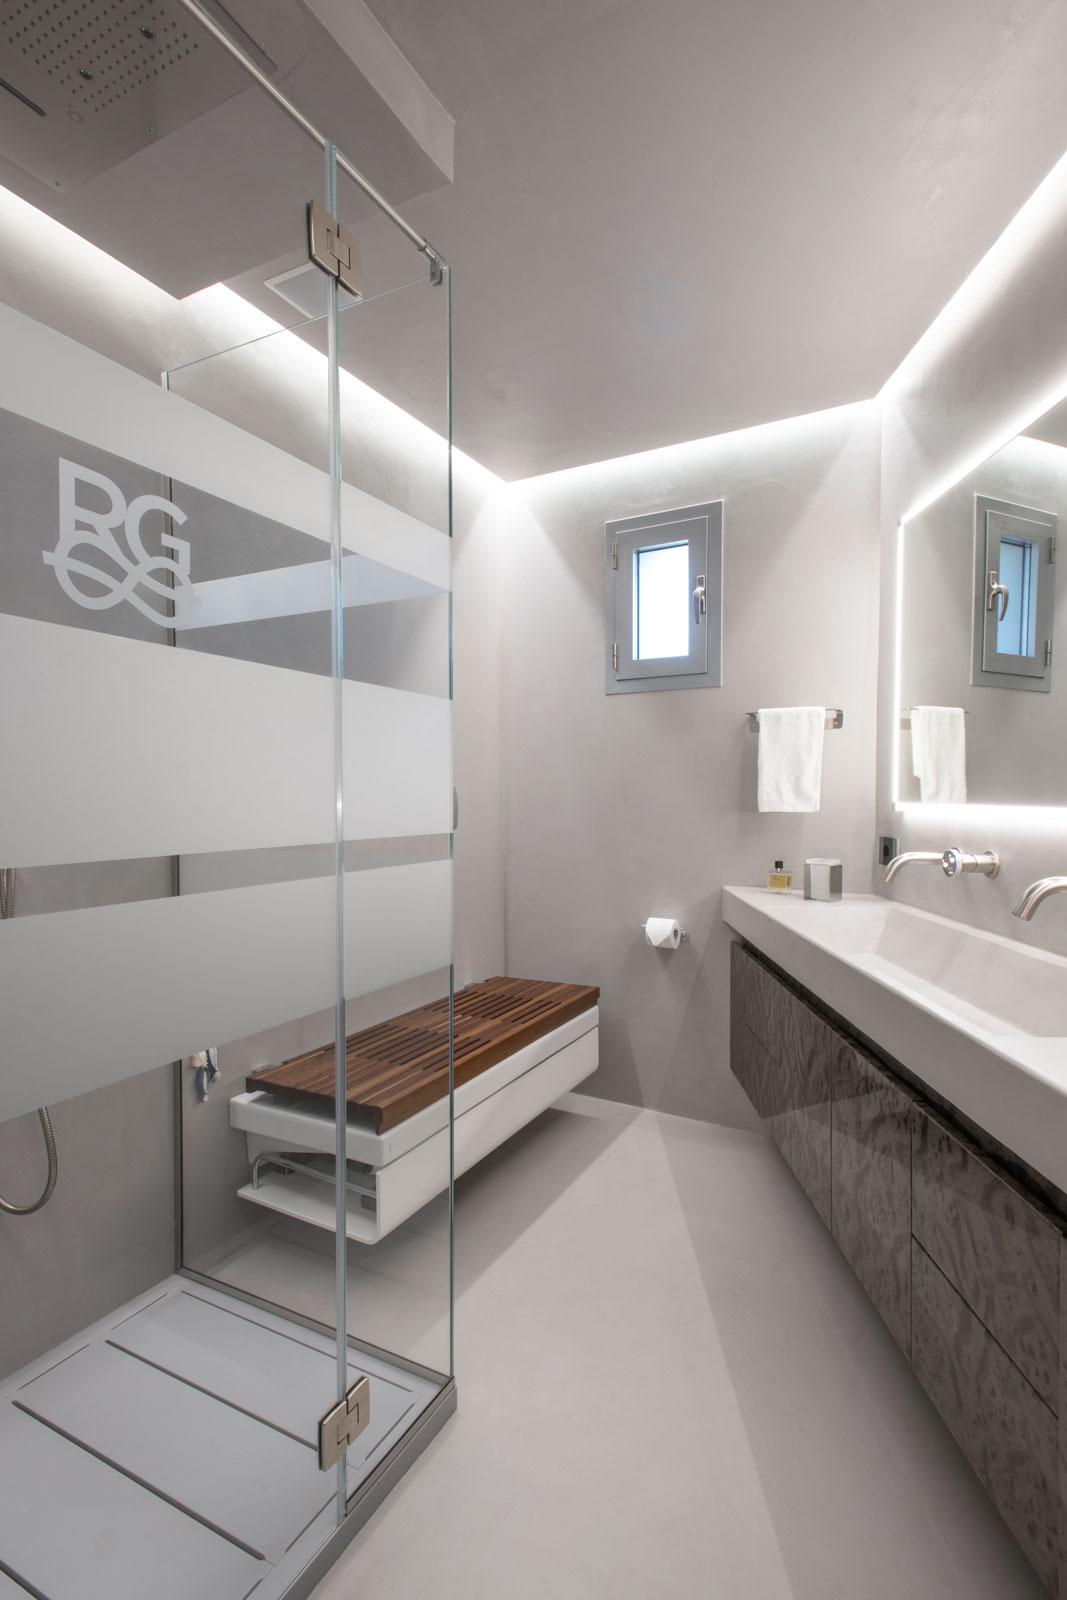 Bagno moderno in resina di cemento con doccia wellness, box in cristallo e panca con sanitari integrati